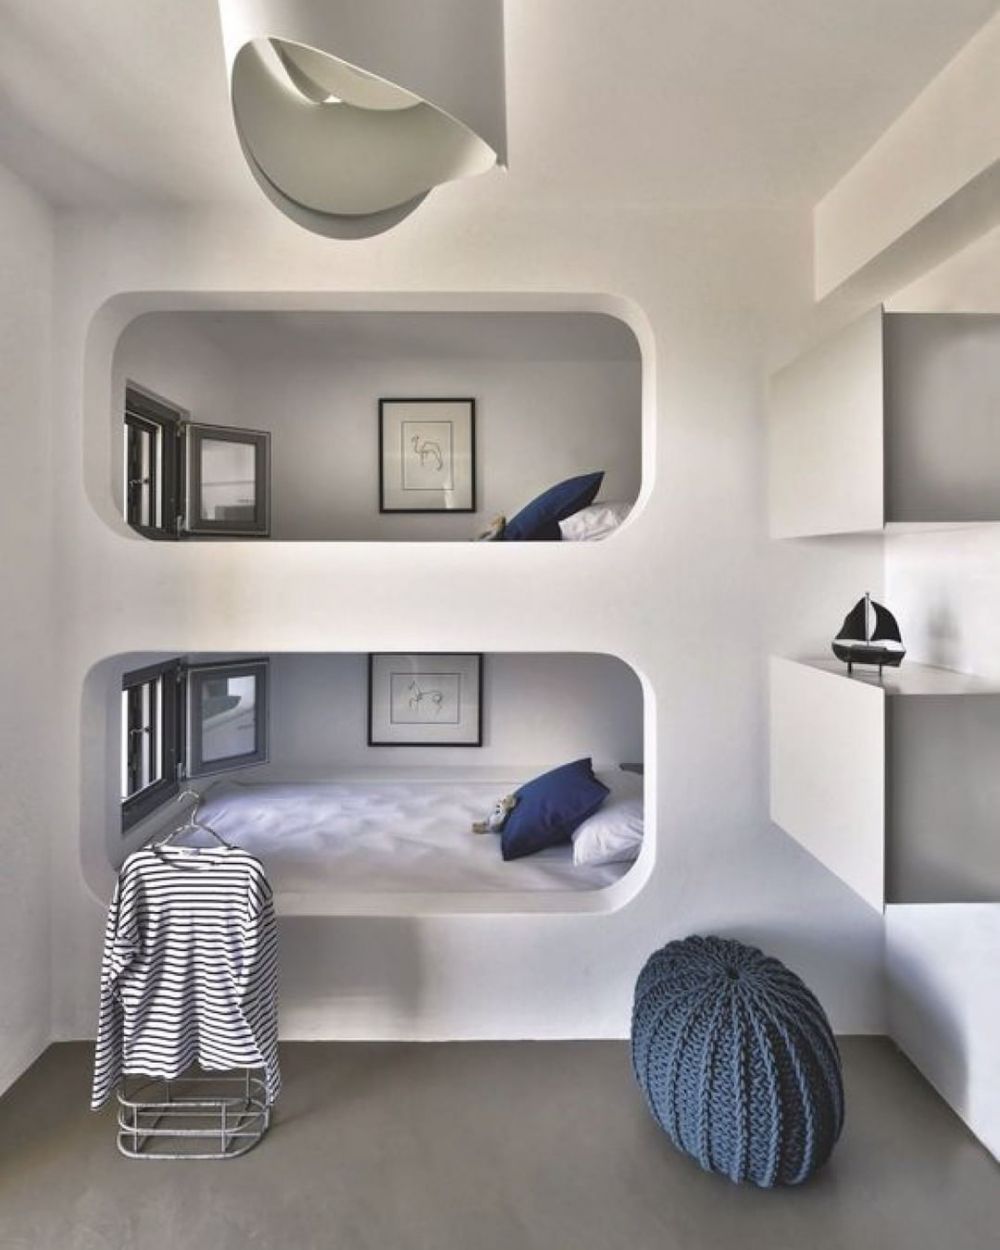 10 Desain Kamar Tidur Dengan Bunk Bed, Bikin Tambah Cozy!